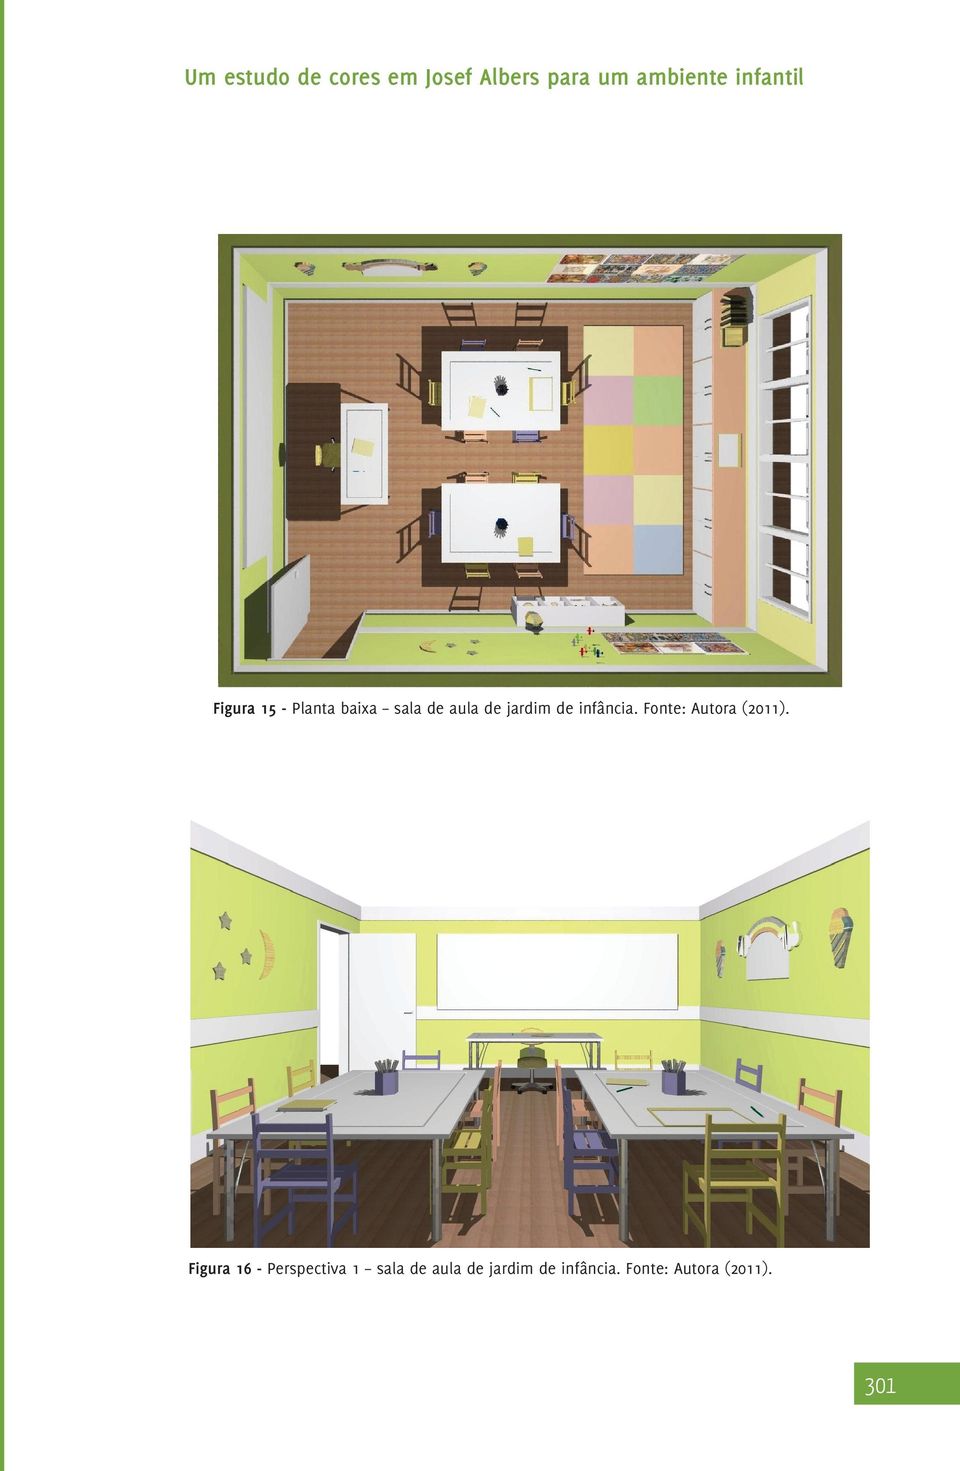 Figura 16 - Perspectiva 1 sala de aula de 